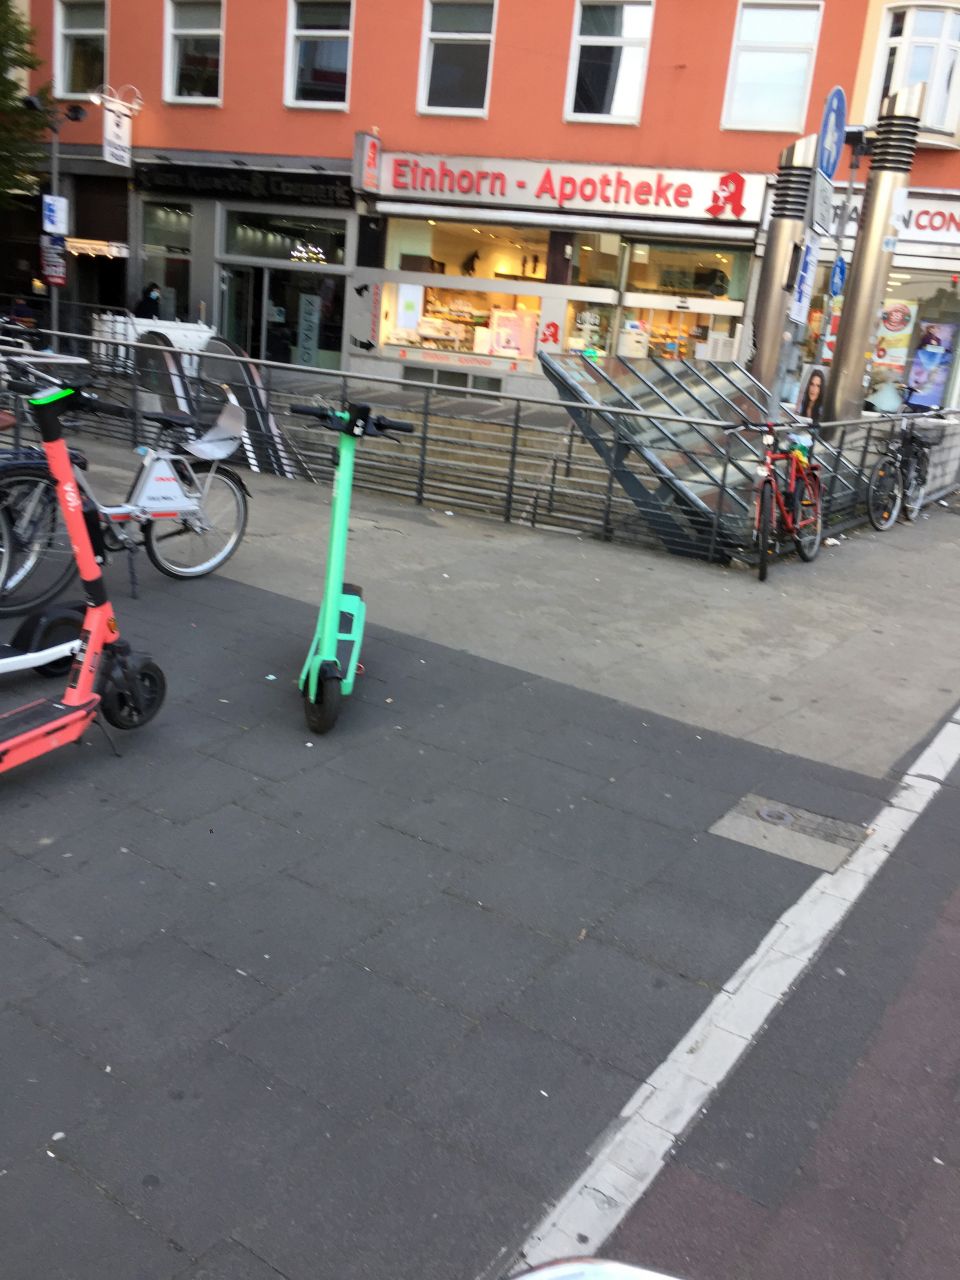 Gepflasteter Platz vor der Einhorn-Apotheke. Auf dem Platz stehen Elektro-Roller und Fahrräder.